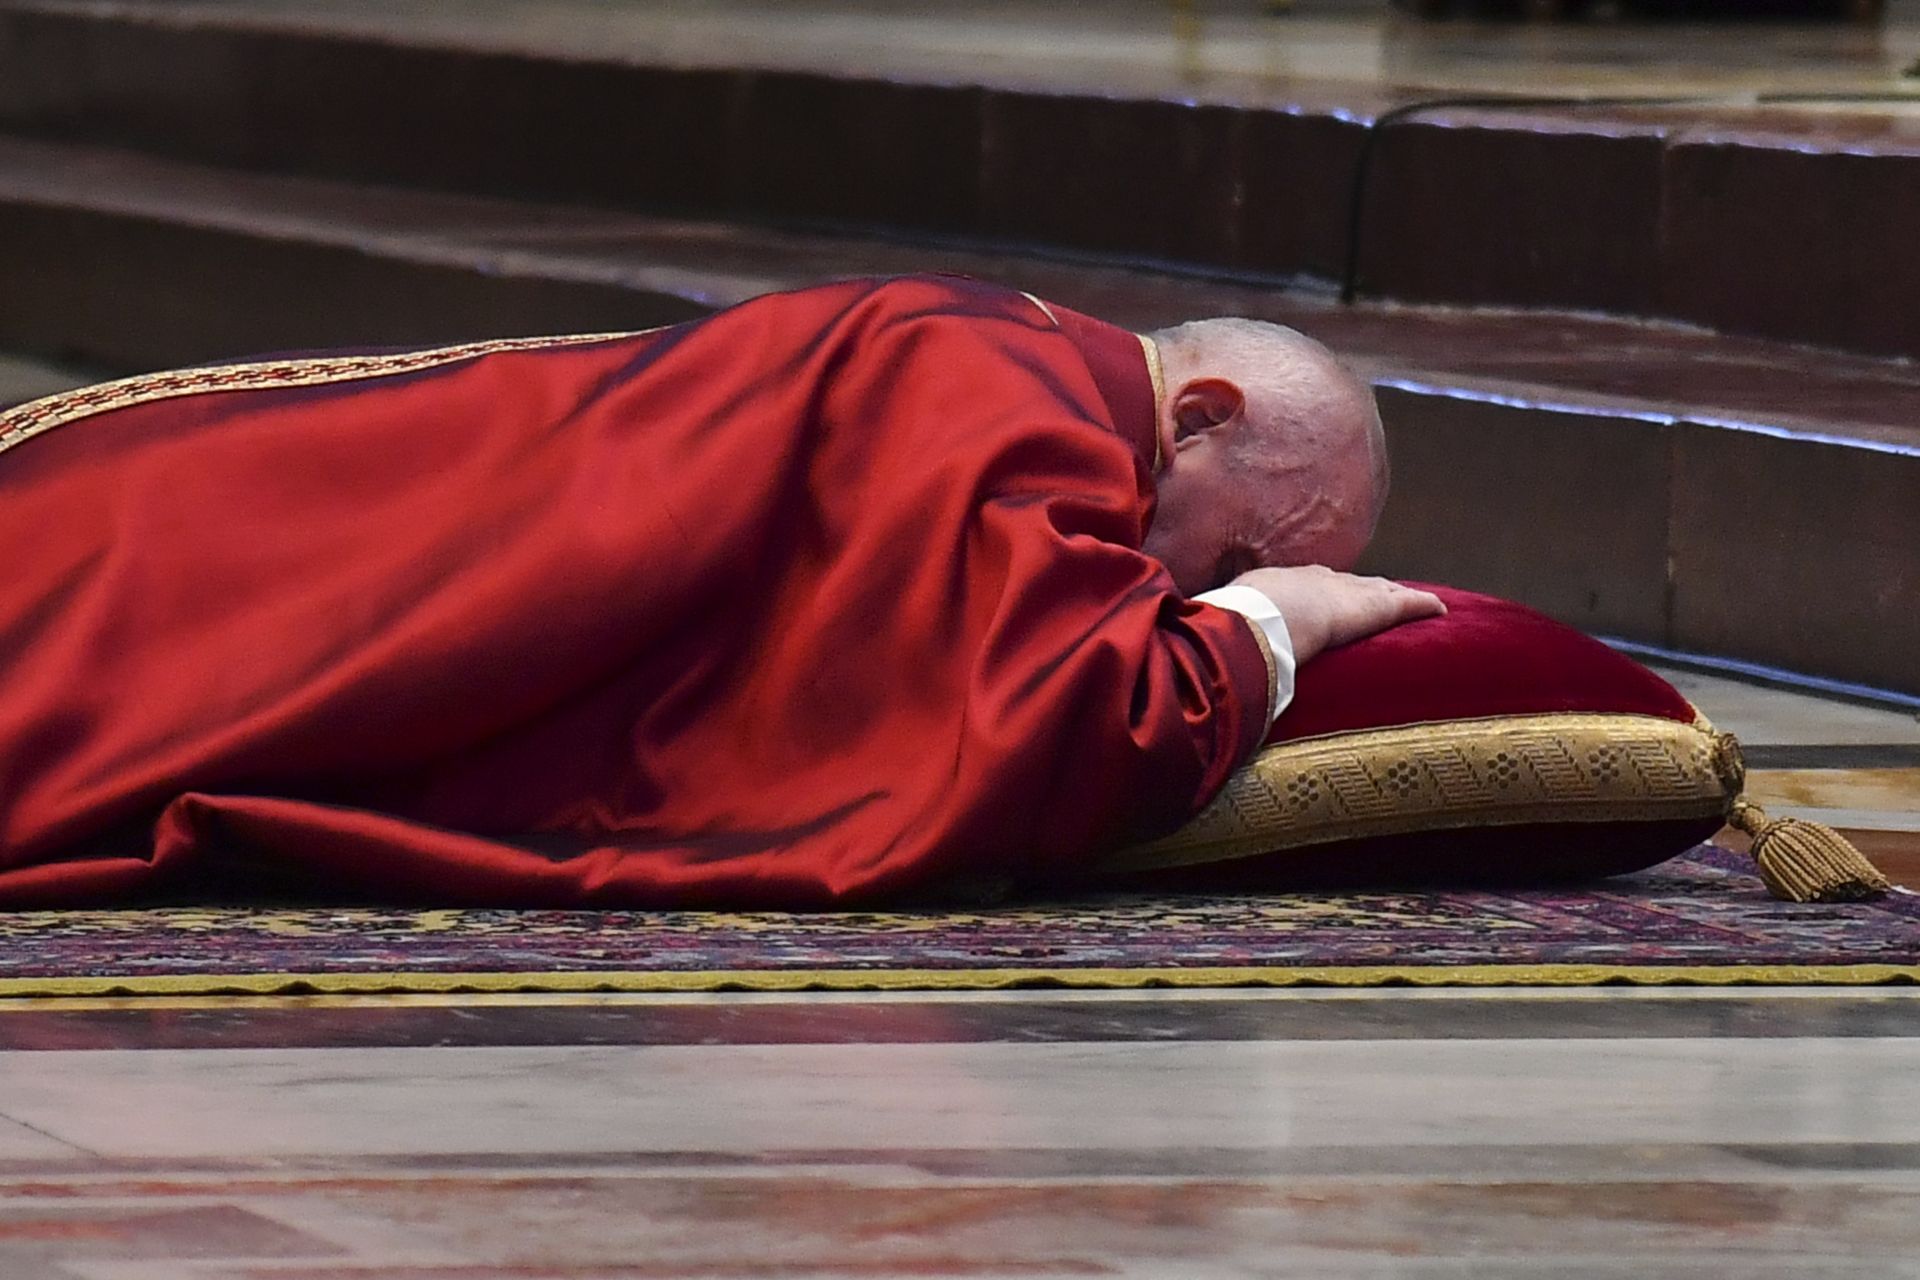 Папата отправи молитва към Господ "да ни просветли в тази тъмна нощ, за да не загубим пътя си в този труден период"